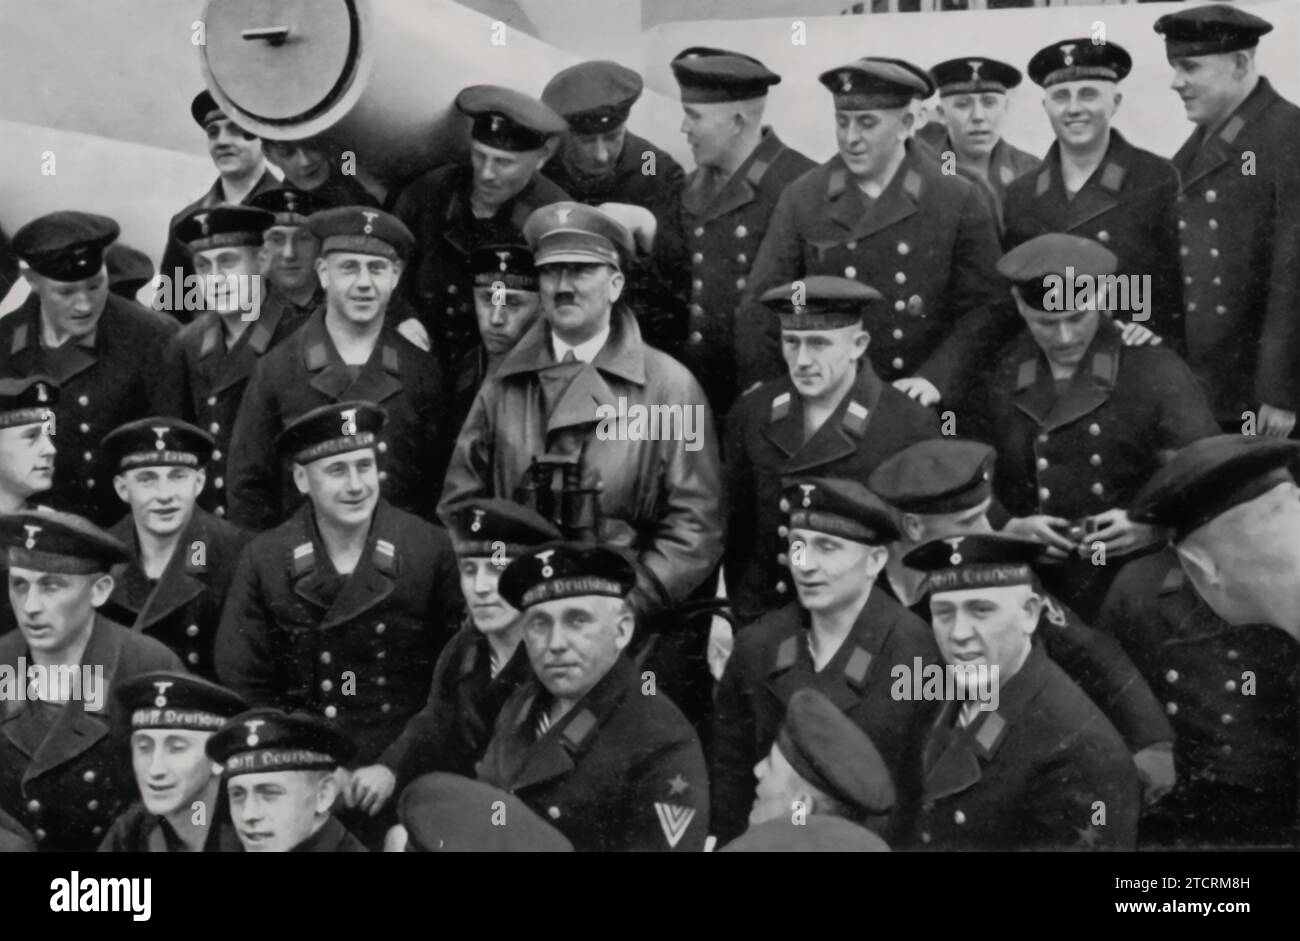 Adolf Hitler viene catturato nel mezzo del suo "Blauen Jungen" (Blue Boys), un termine spesso usato per riferirsi ai membri della Kriegsmarine, la Marina tedesca. Questa immagine riflette la sua stretta associazione con le forze navali, sottolineando il suo impegno a rafforzare e mostrare la forza militare del regime nazista. Foto Stock